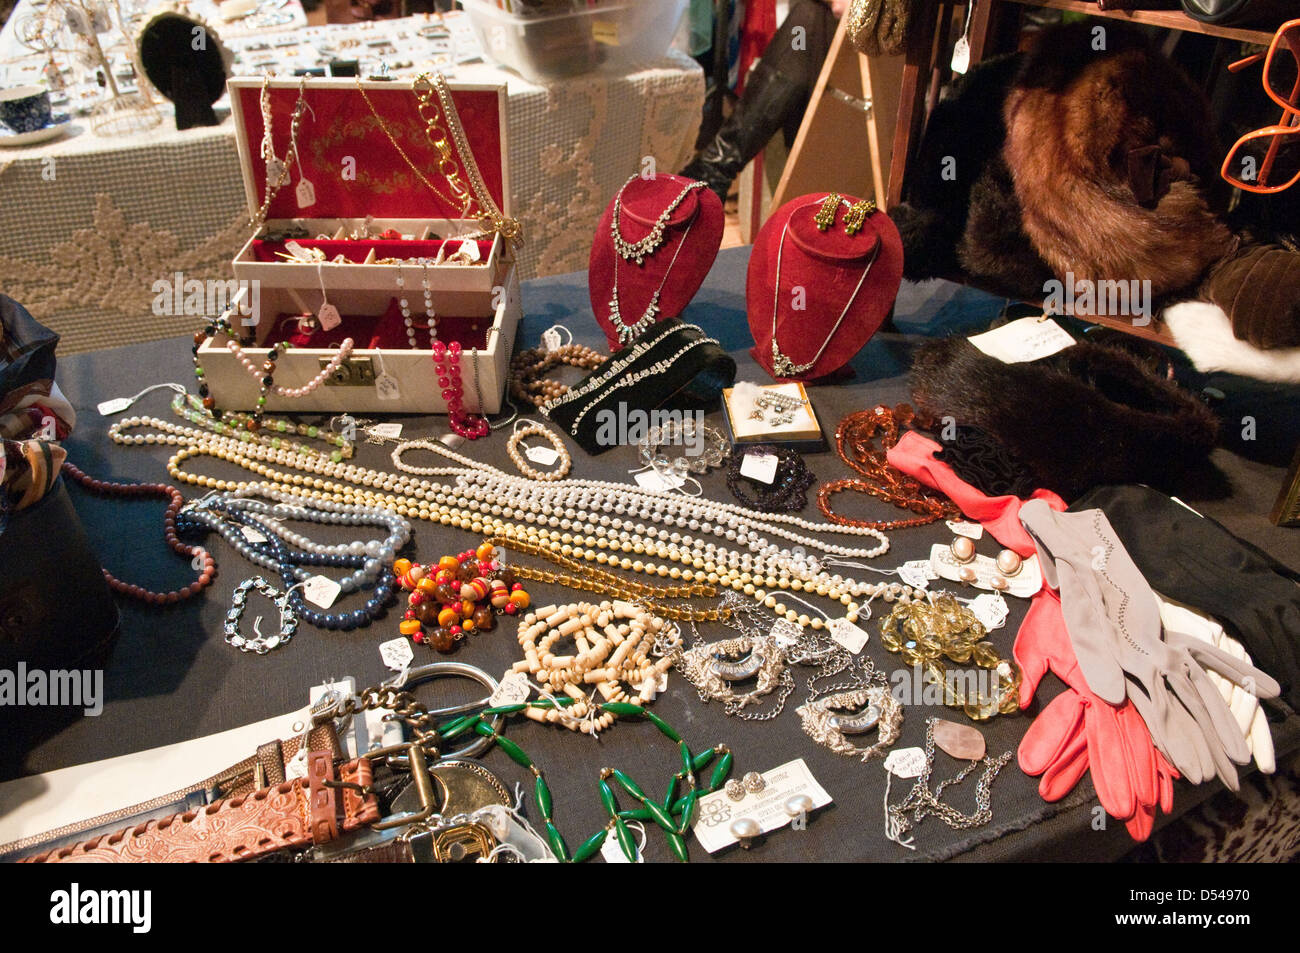 La mode vintage bijoux, colliers de perles, ceintures, gants et cache- oreilles fourrure slik sur affichage sur un stand à une foire de vêtements  vintage Photo Stock - Alamy